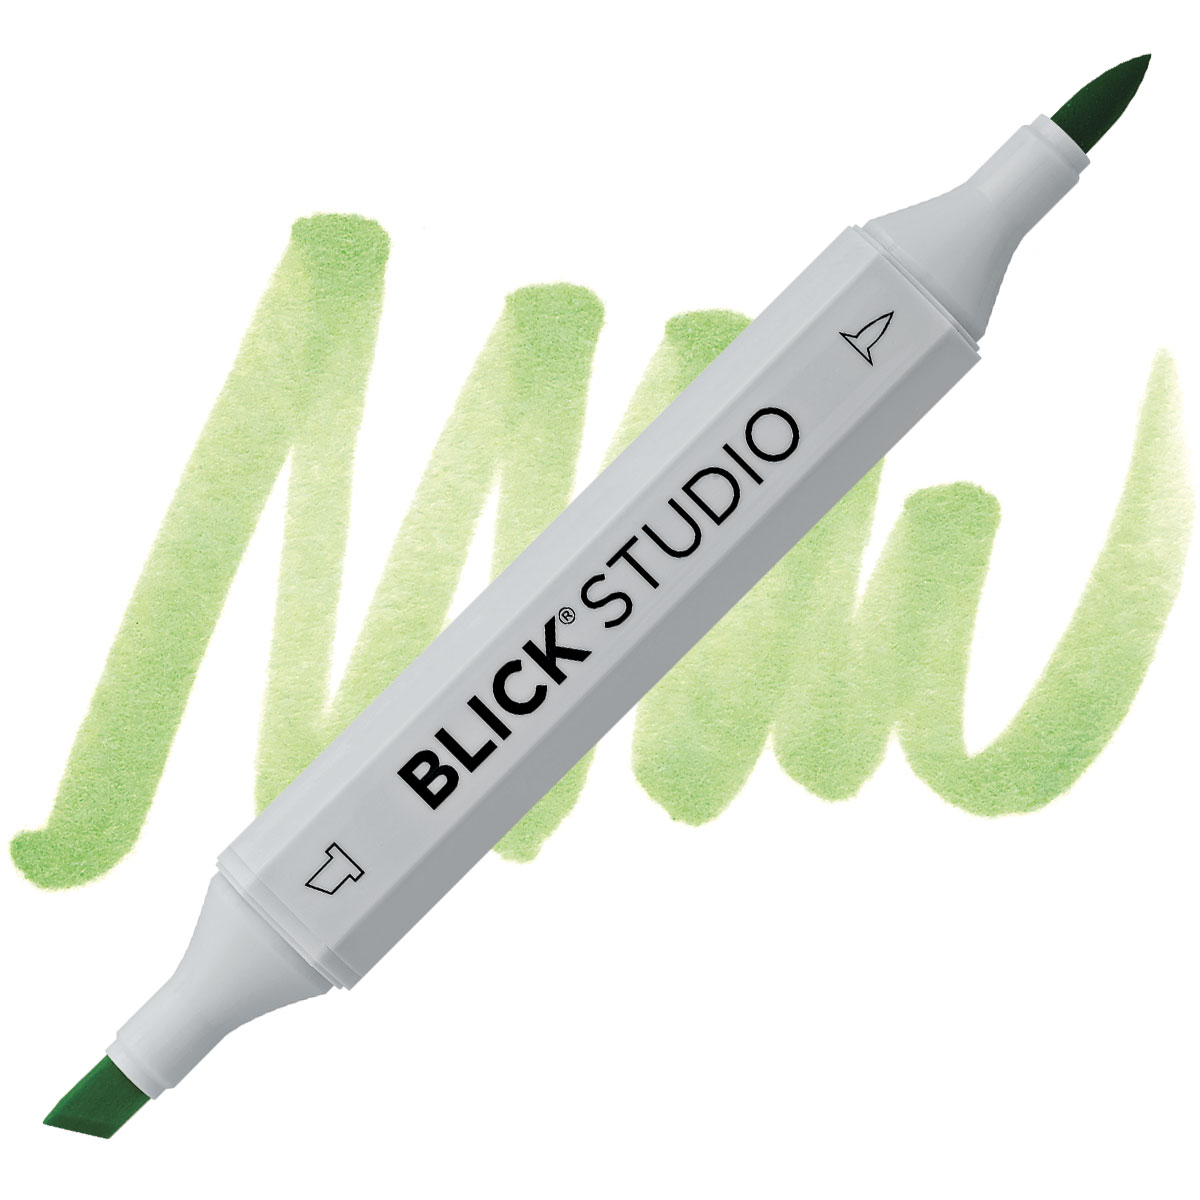 Free Blick Studio 96 Brush Markers Swatch Chart